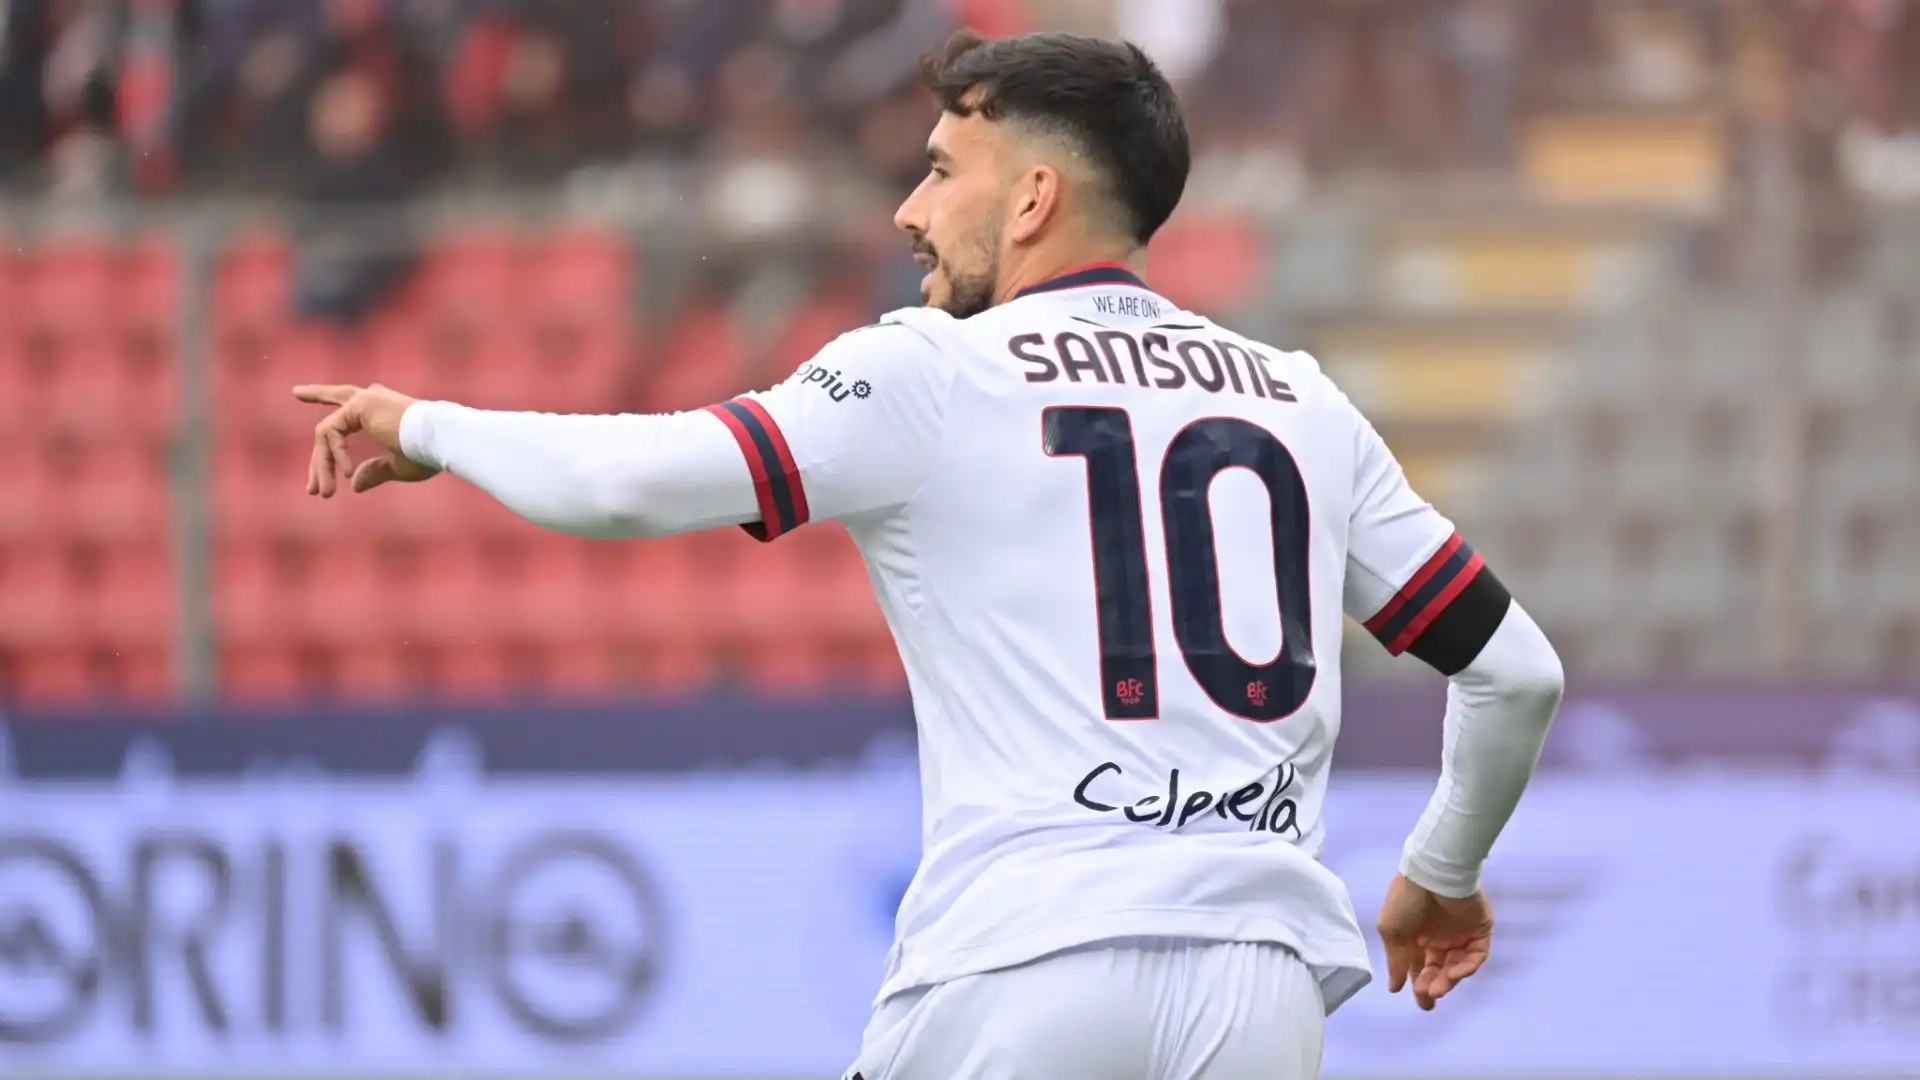 Nicola Sansone ha segnato il gol del 5-0 al minuto 80